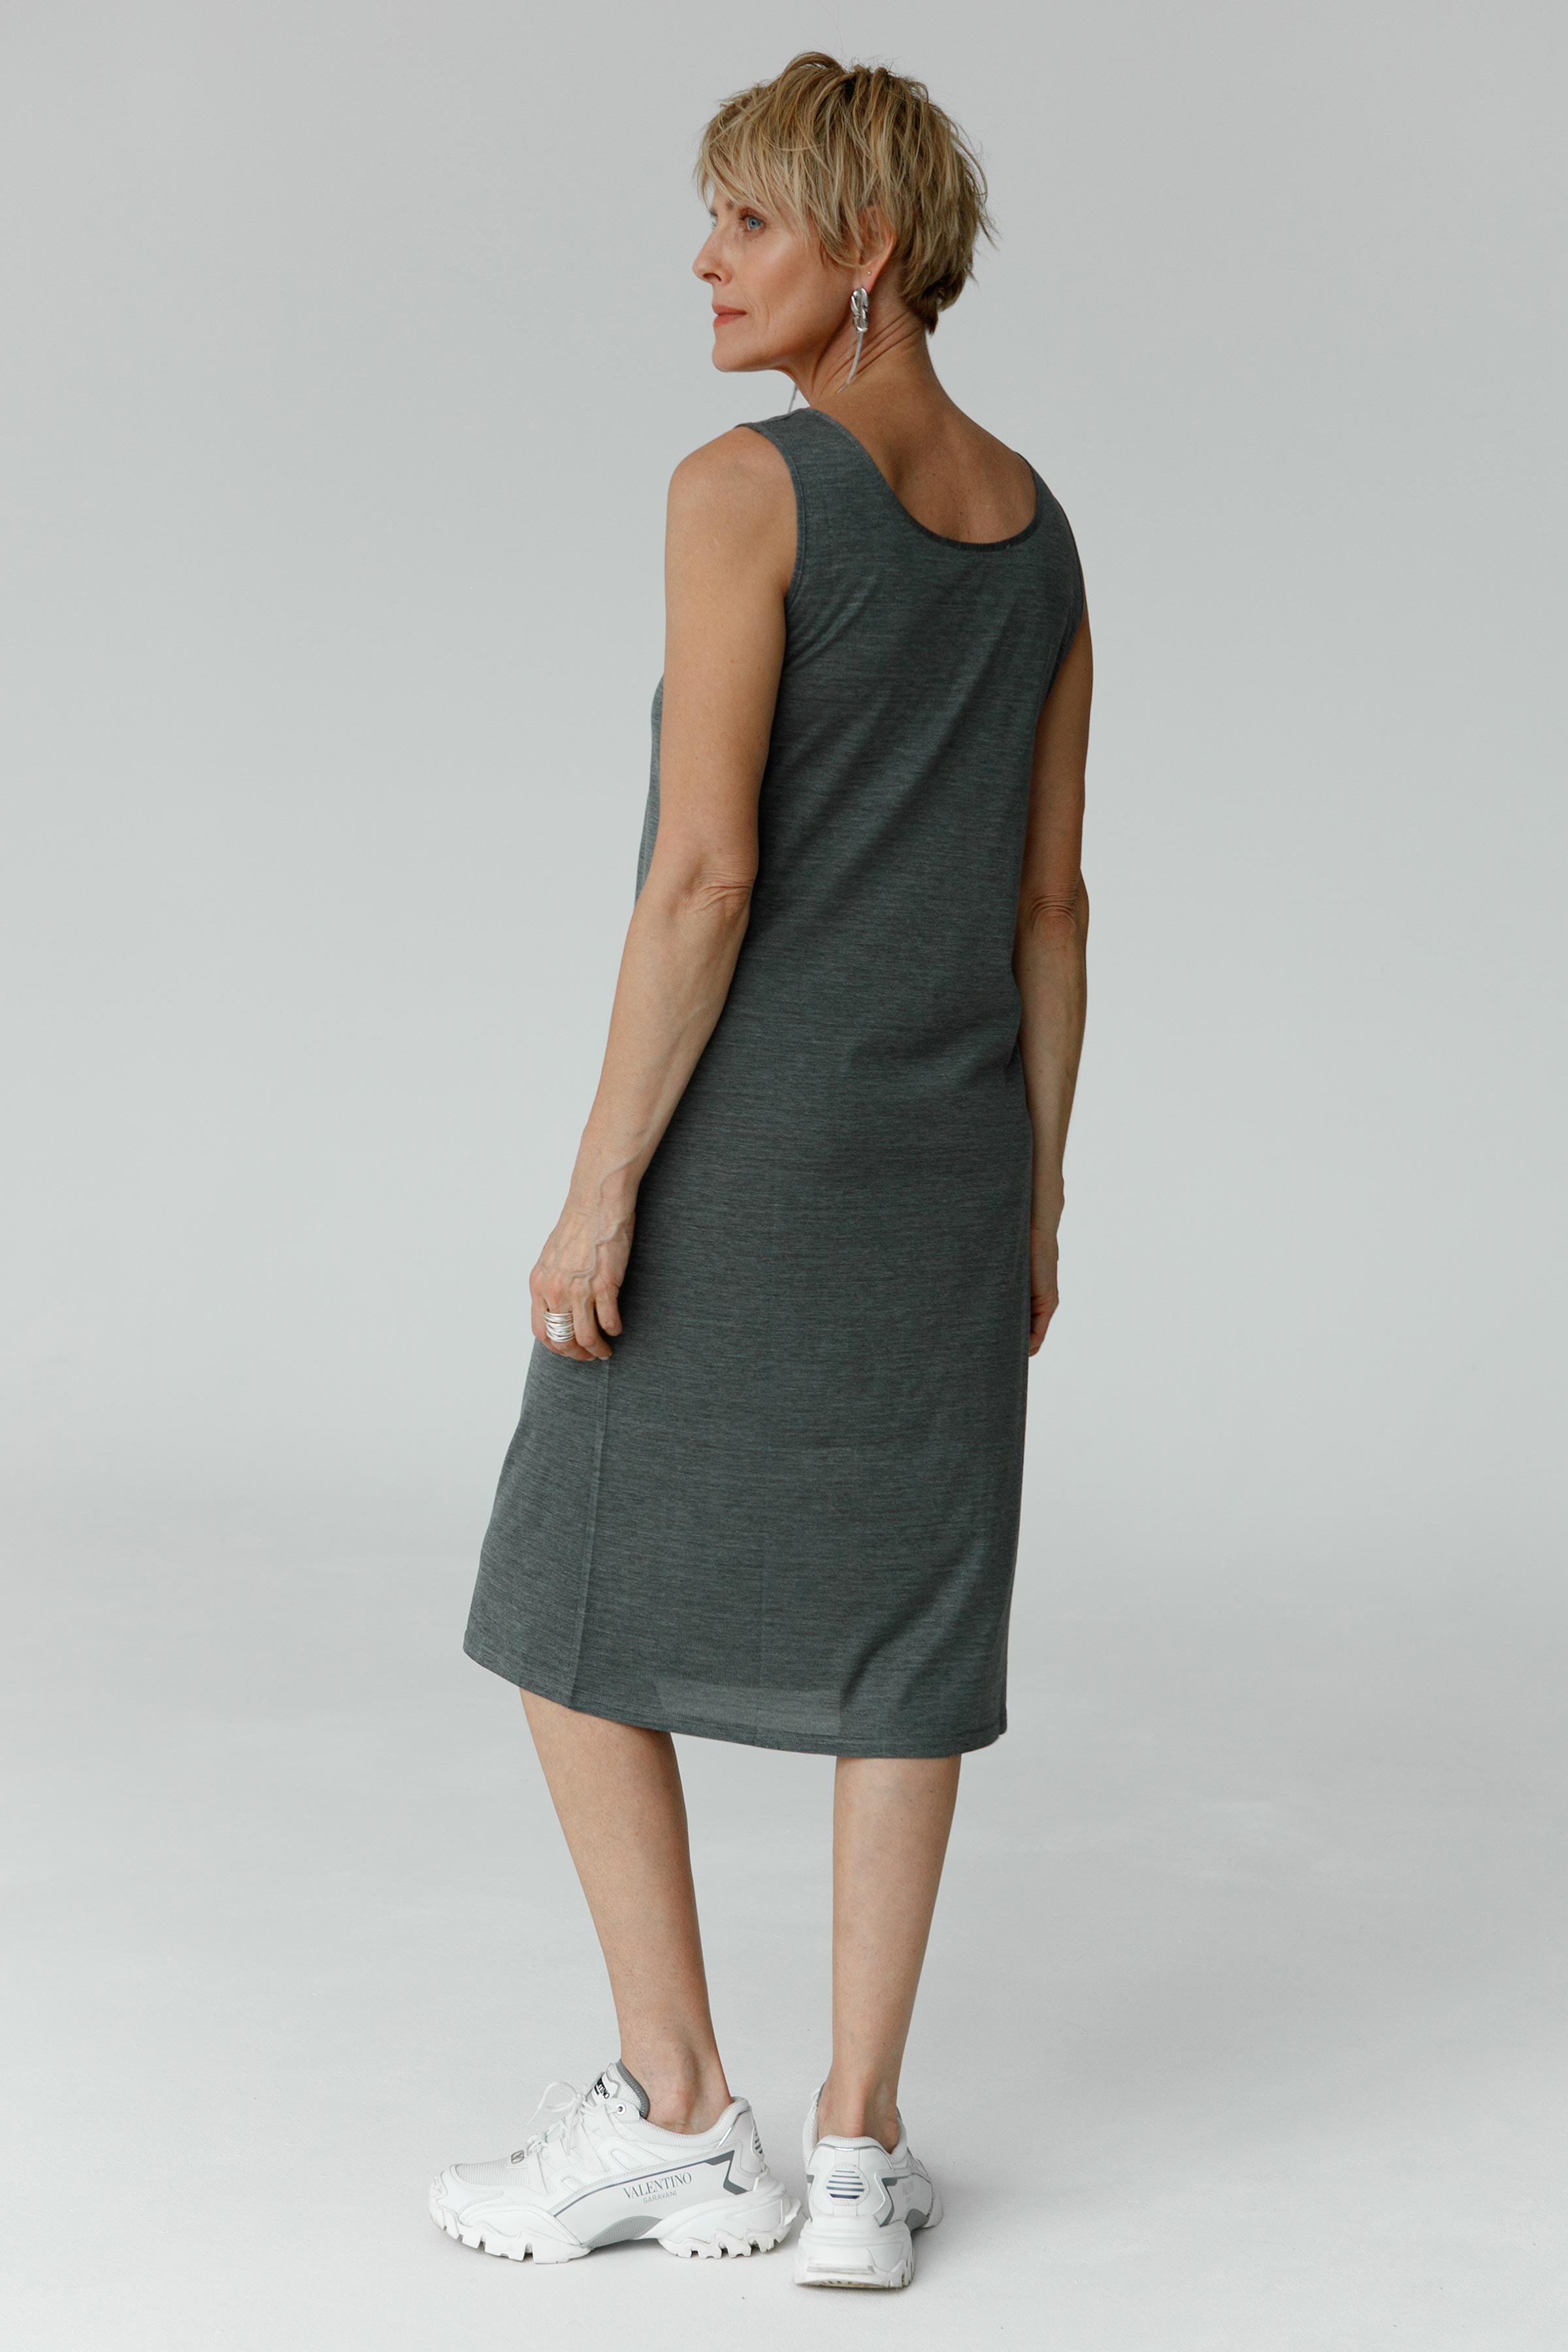 Платье база среднее узкое 15 Серый меланж (melange gris) от Lesel (Лесель)! Заказывайте по ✆ 8 (800) 777 02 37